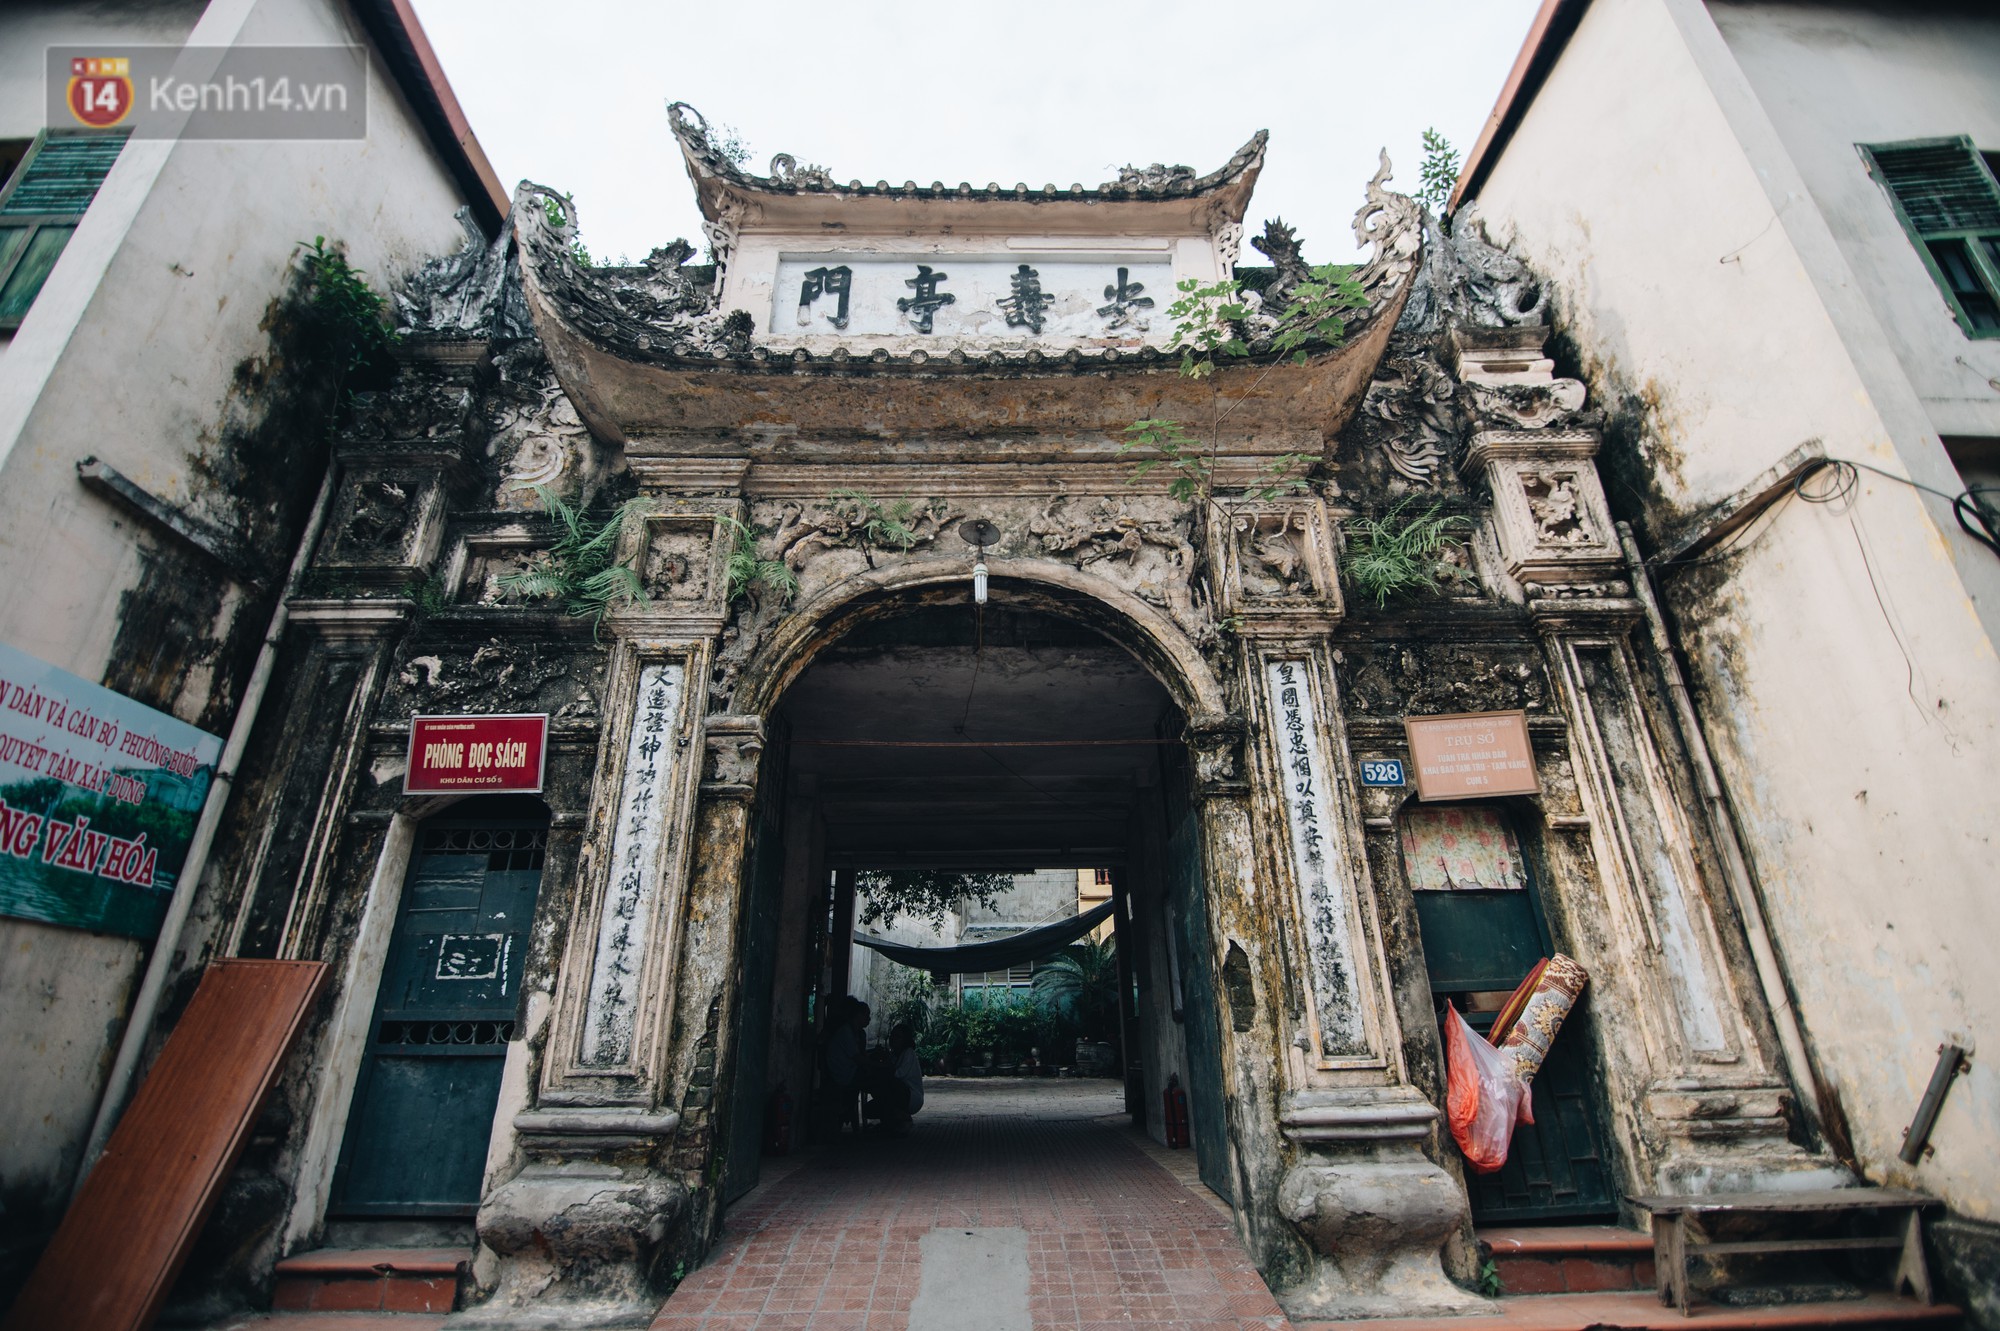 Chuyện về một con phố có nhiều cổng làng nhất Hà Nội: Đưa chân qua cổng phải tôn trọng nếp làng - Ảnh 3.